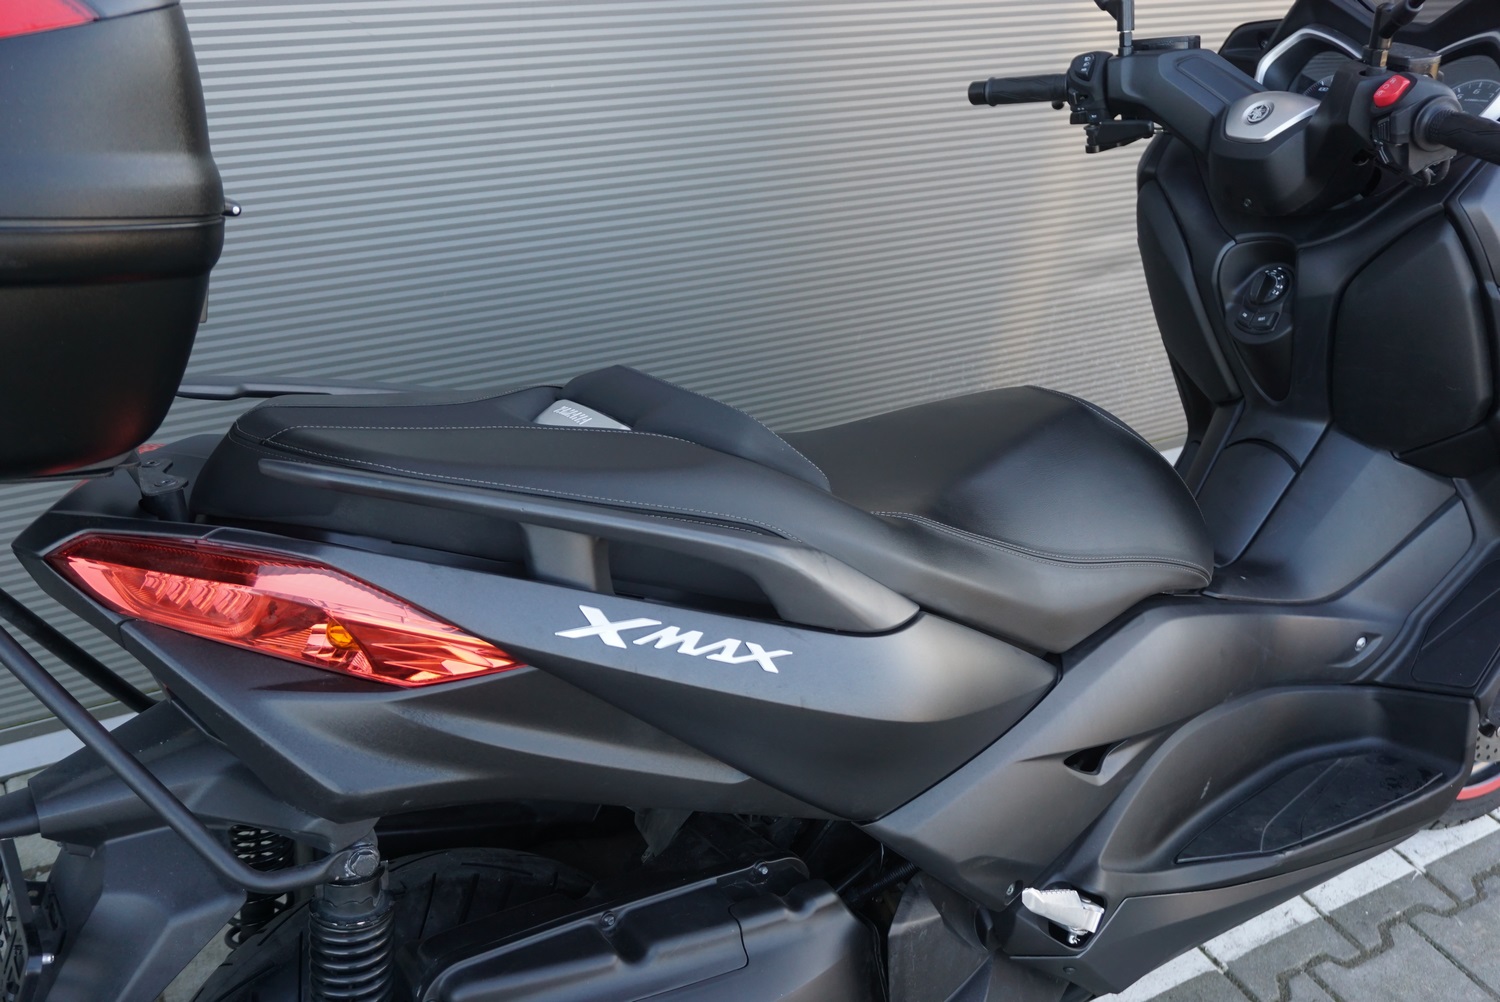 Yamaha X-Max 400 ABS